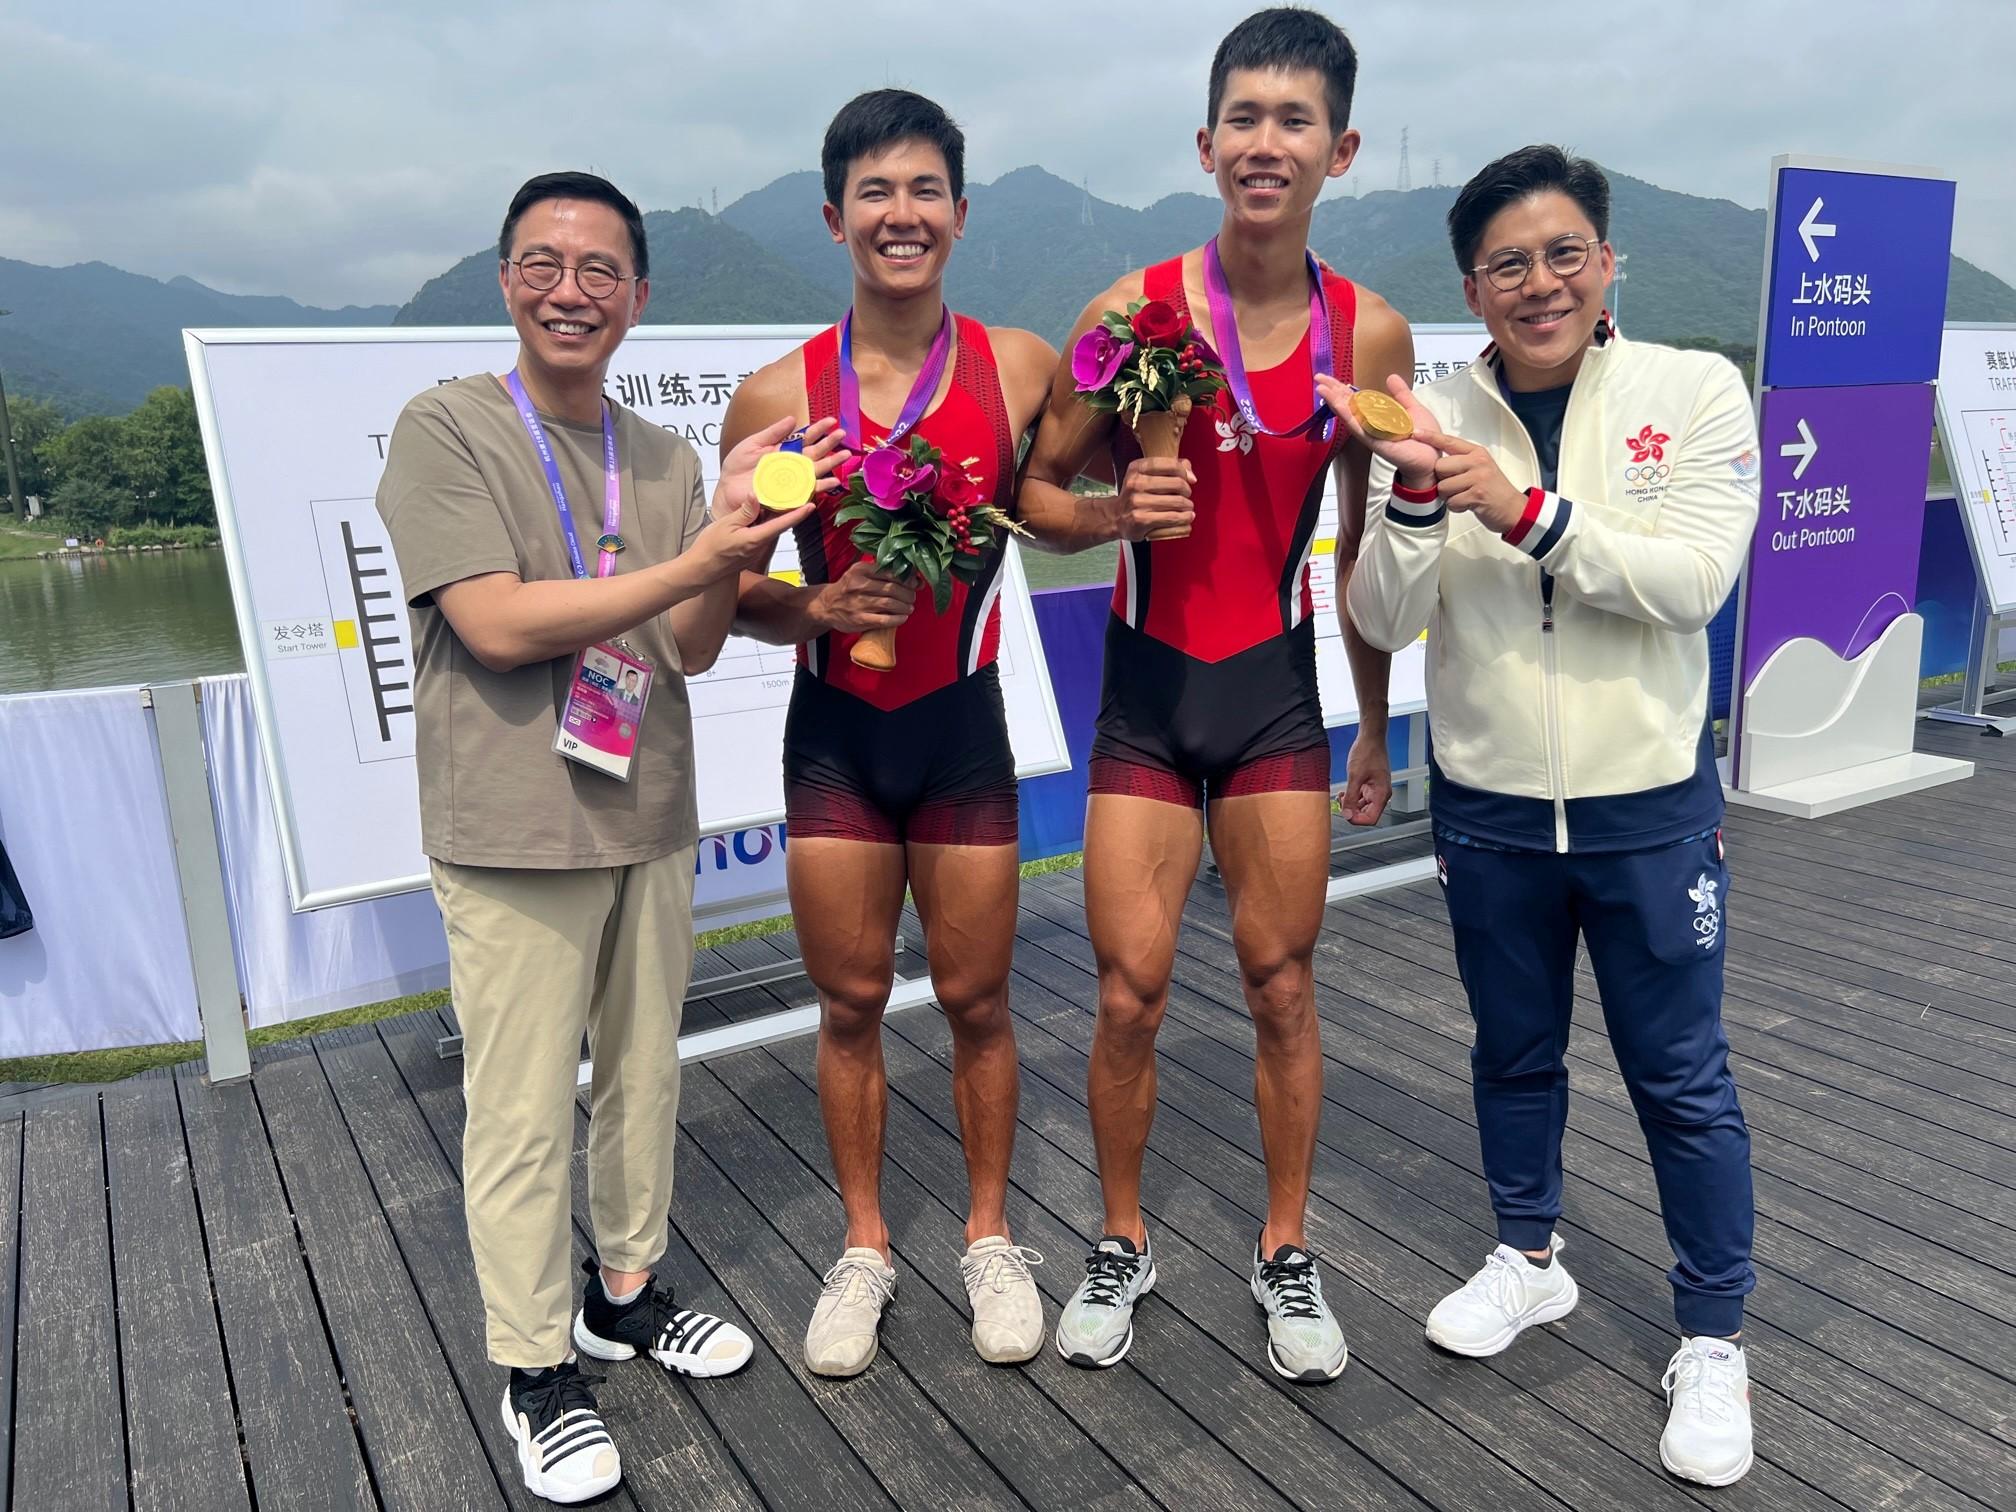 文化體育及旅遊局局長楊潤雄（左一）今日（九月二十四日）恭賀賽艇運動員林新棟（左二）、王瑋駿（右二）在杭州第19屆亞洲運動會（杭州亞運）男子雙人單槳賽勇奪金牌，這是中國香港代表隊於今屆杭州亞運會取得的首面金牌。